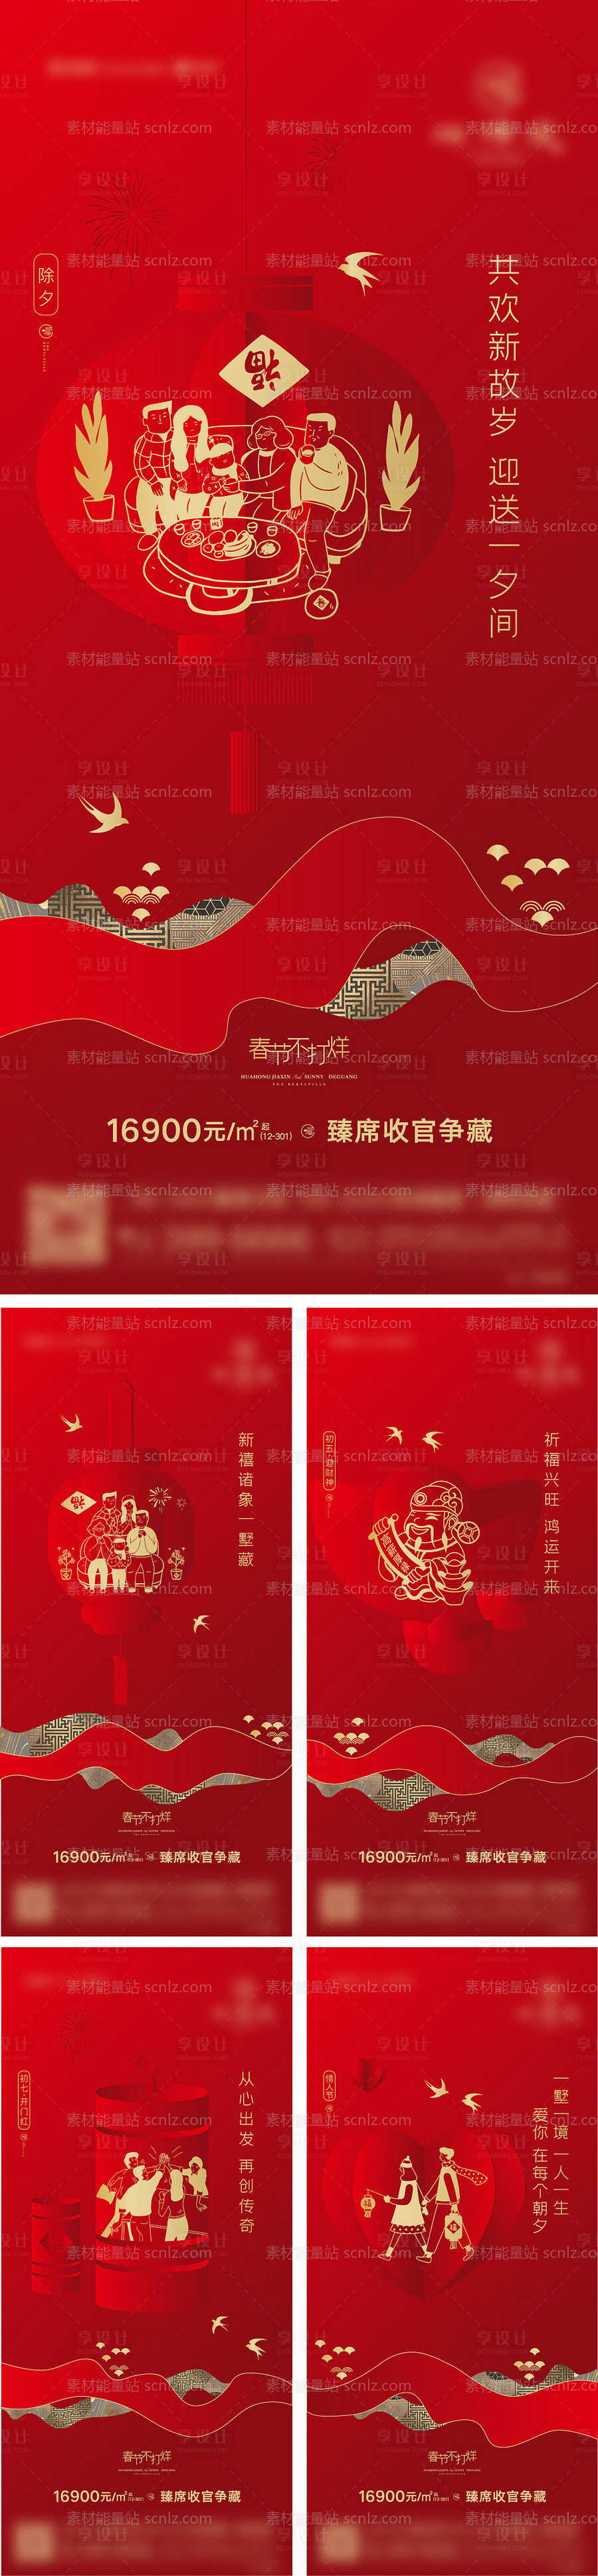 素材能量站-春节期间红色系列刷屏